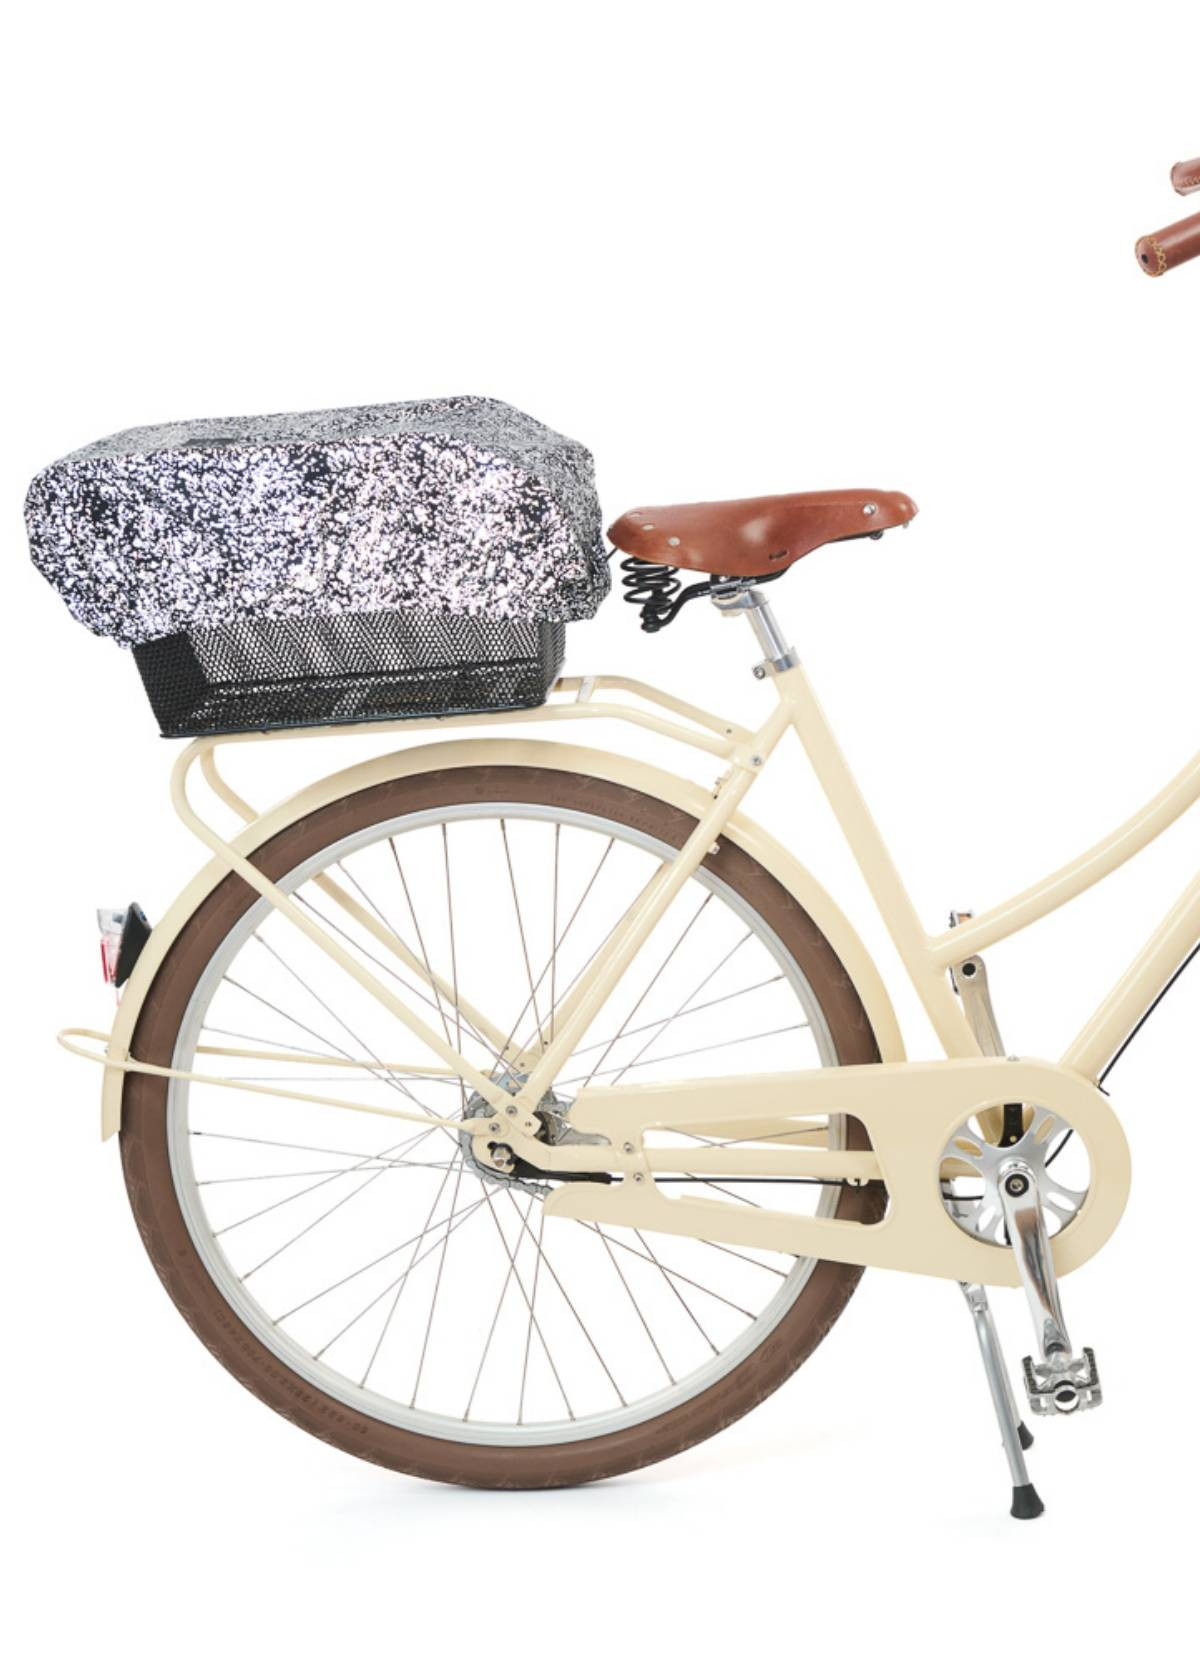 Housse imperméable pour panier vélo Keep N Dry L Basil